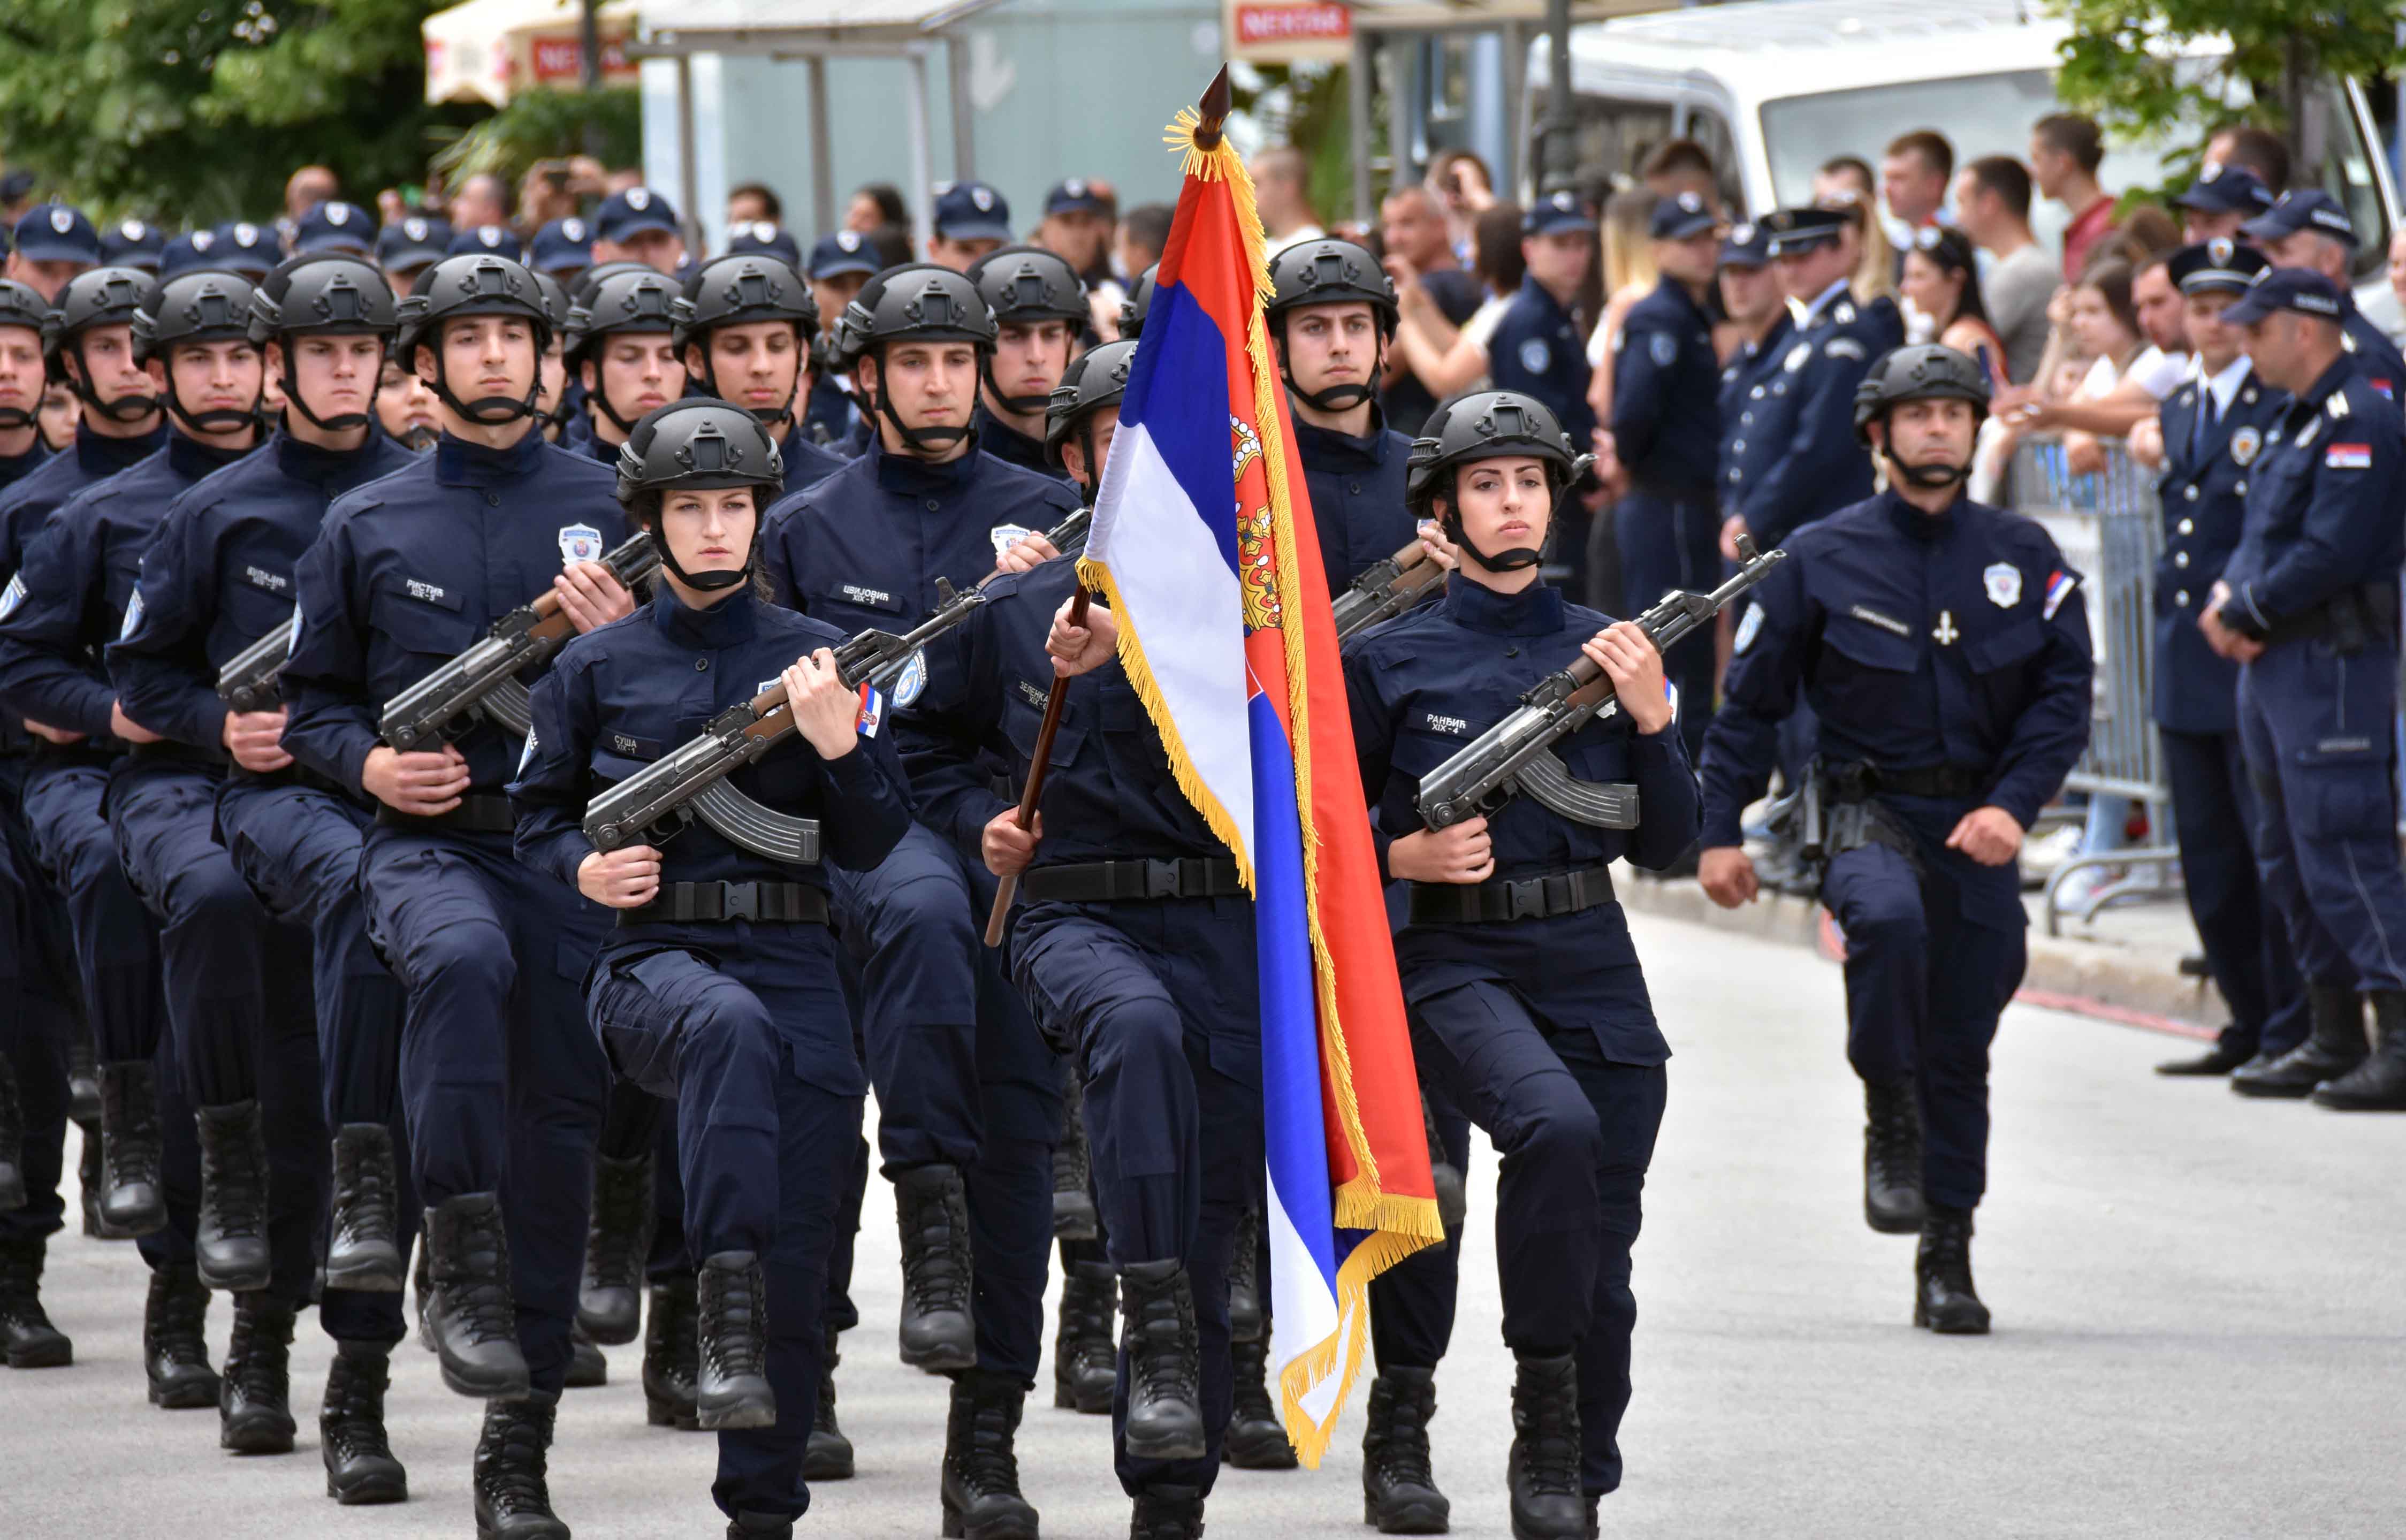 Одржана Свечана промоција 711 нових полицајаца и ватрогасаца, дипломираних студената КПУ у Новом Саду